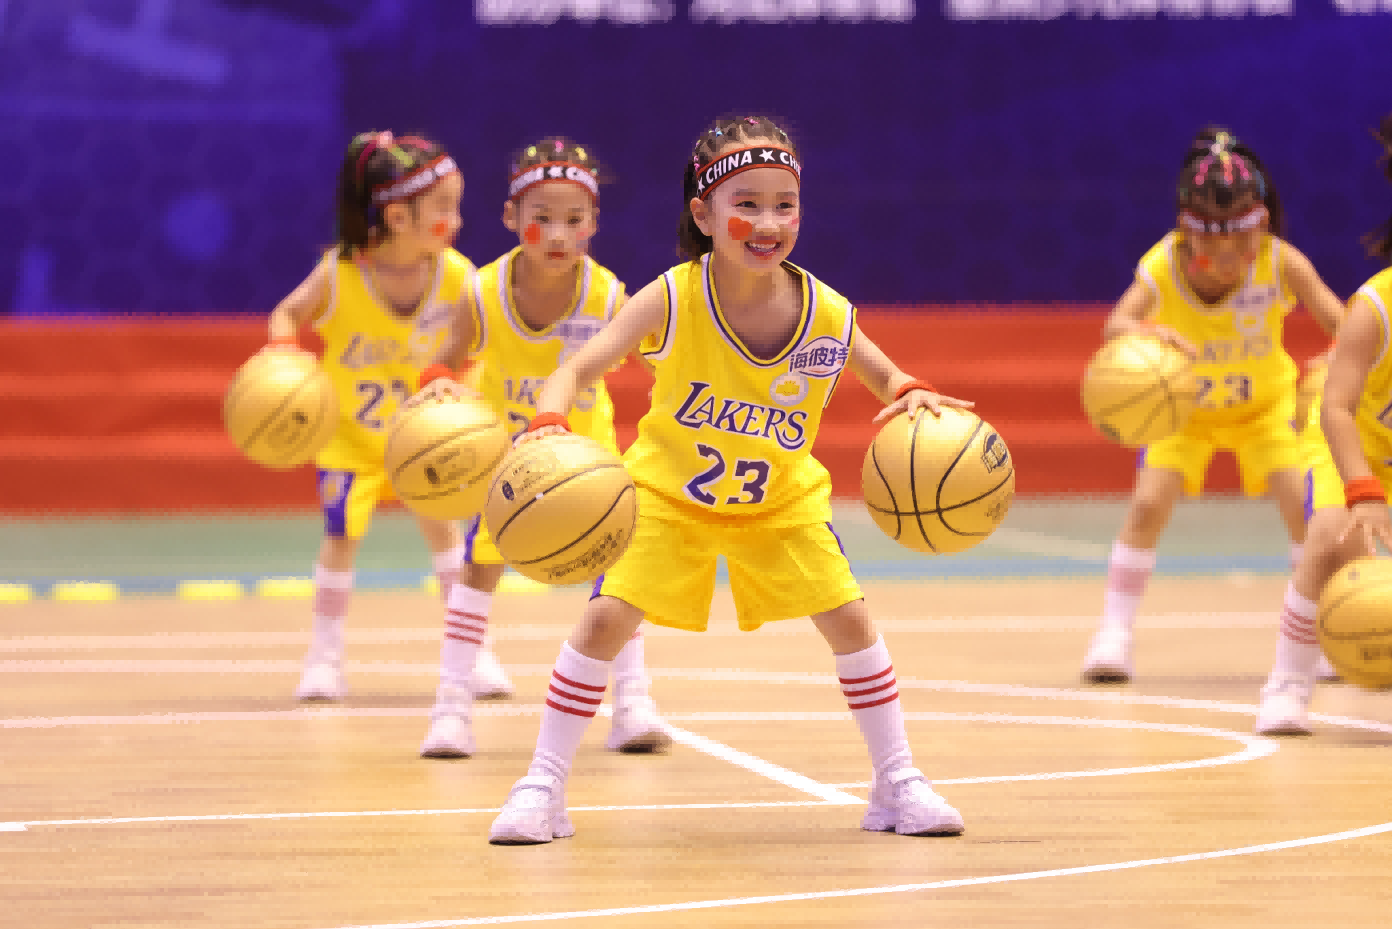 海彼特幼儿体智能篮球，推动幼儿篮球教育普及 商业资讯 第28张